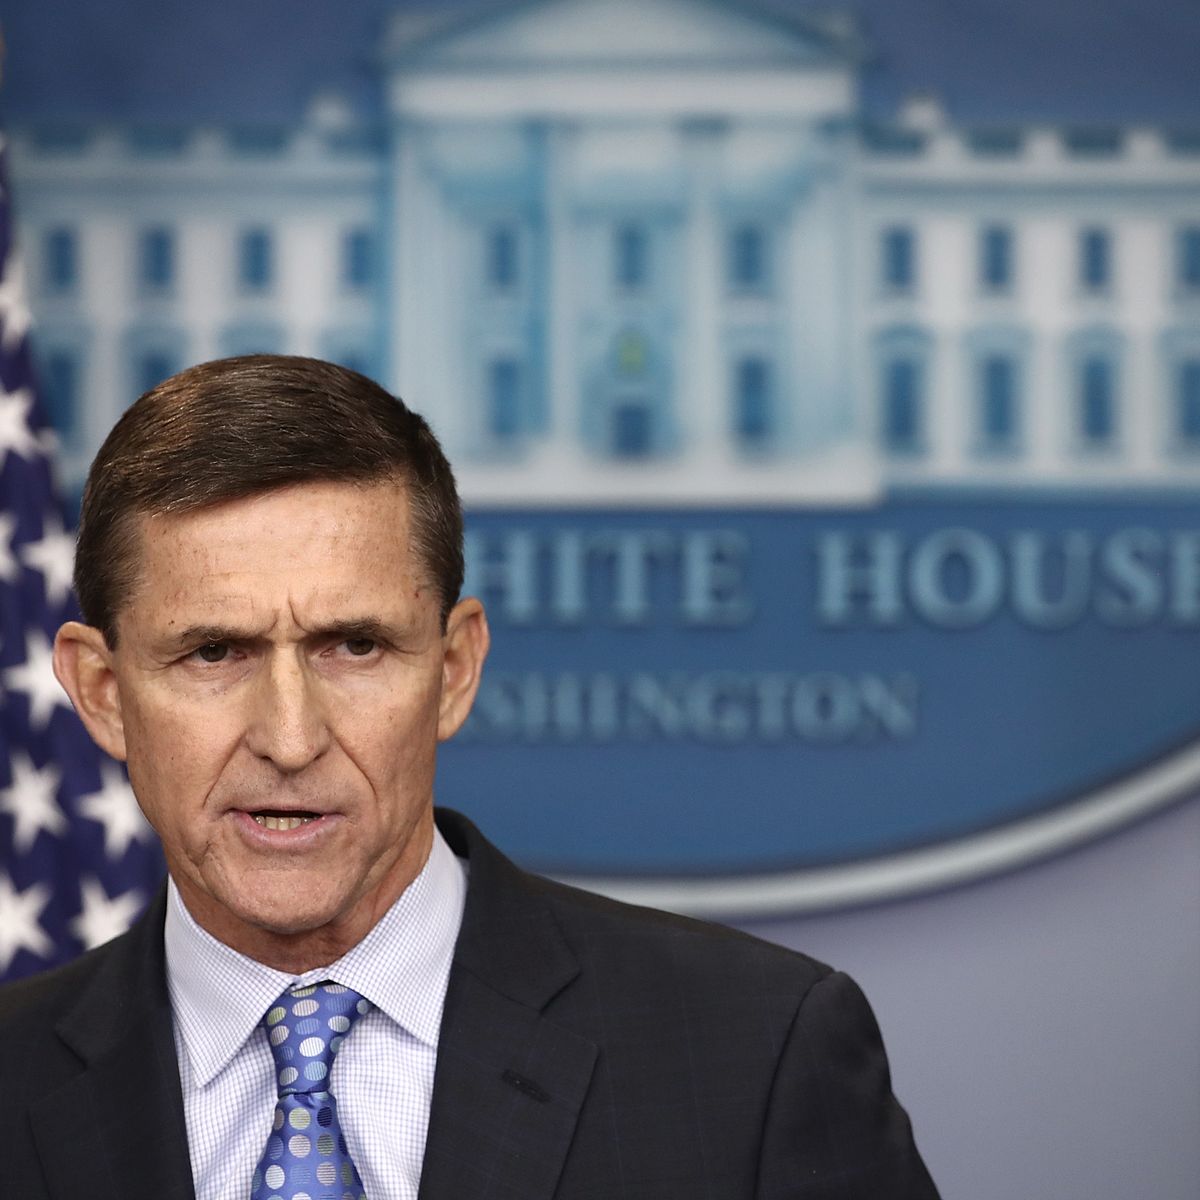 Le général Flynn, qui a apporté son soutien à l'université d'été de Civitas et à Mgr Vigano, avait été le conseiller militaire de Donald Trump à la Maison Blanche